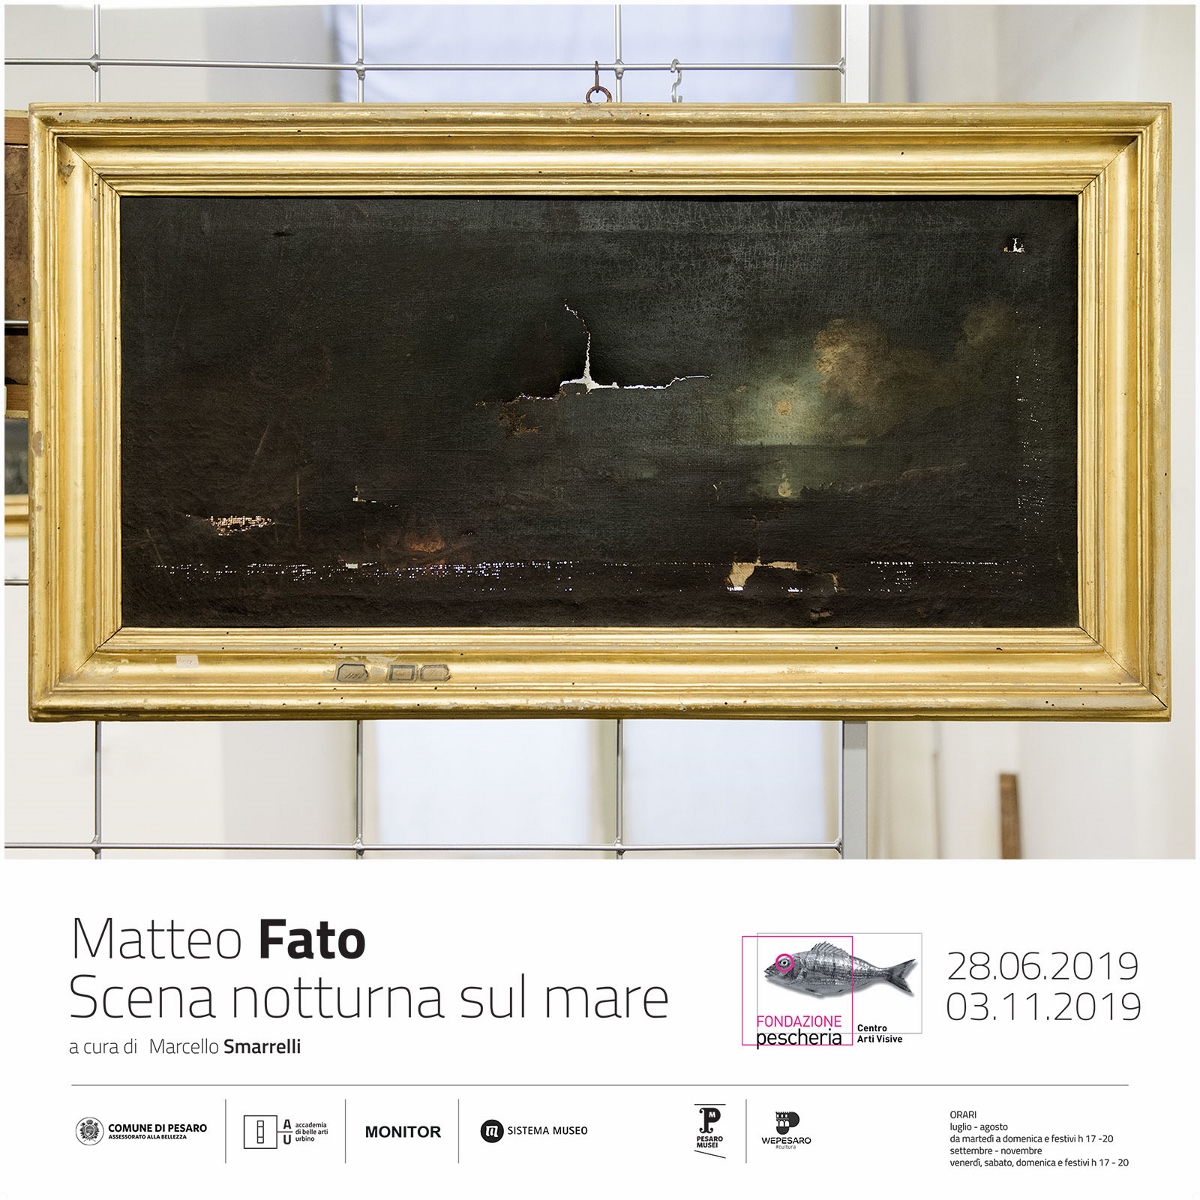 Matteo Fato - Scena notturna sul mare